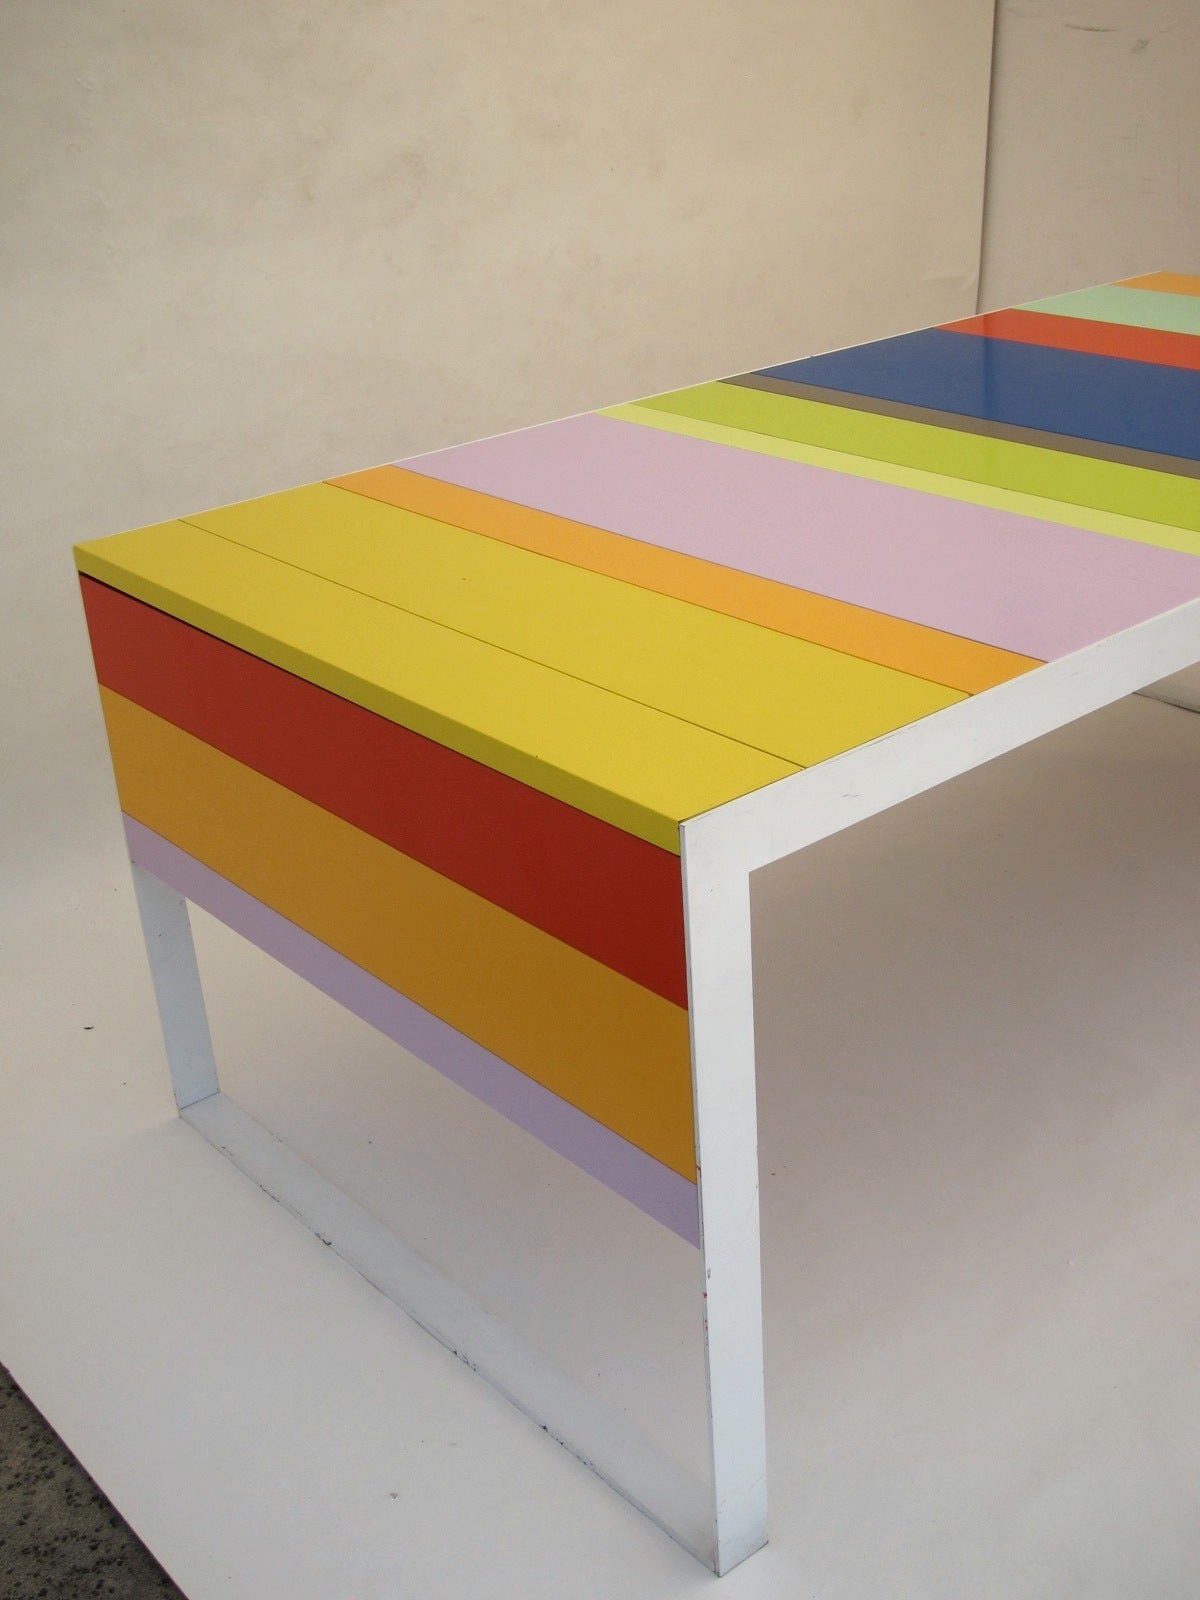 Italian multicolored desk.